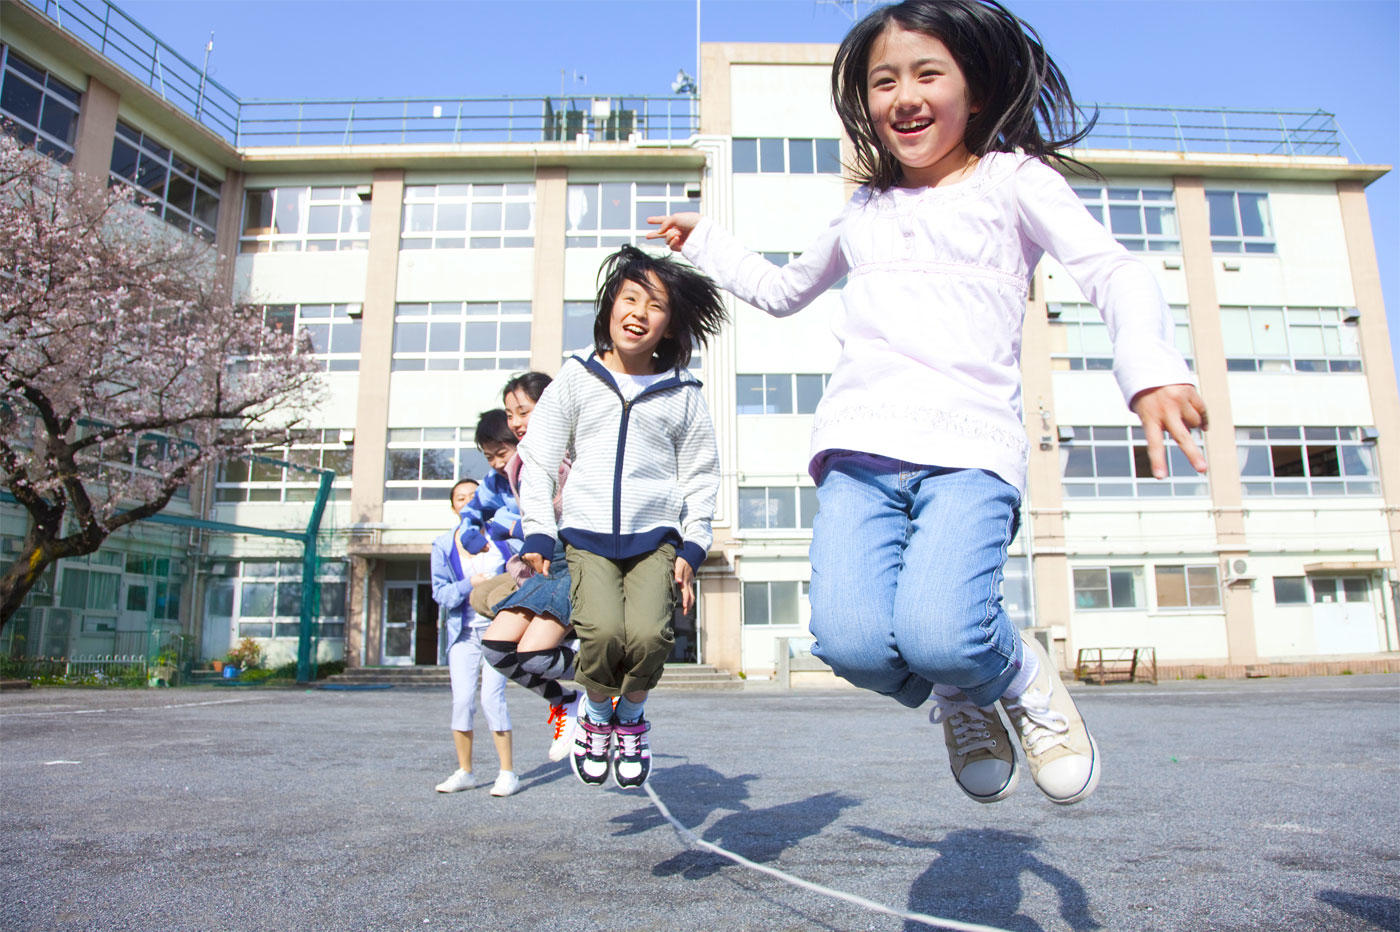 女子児童・生徒の運動量を増やすため、学校の校庭を子どもの視線で設計する